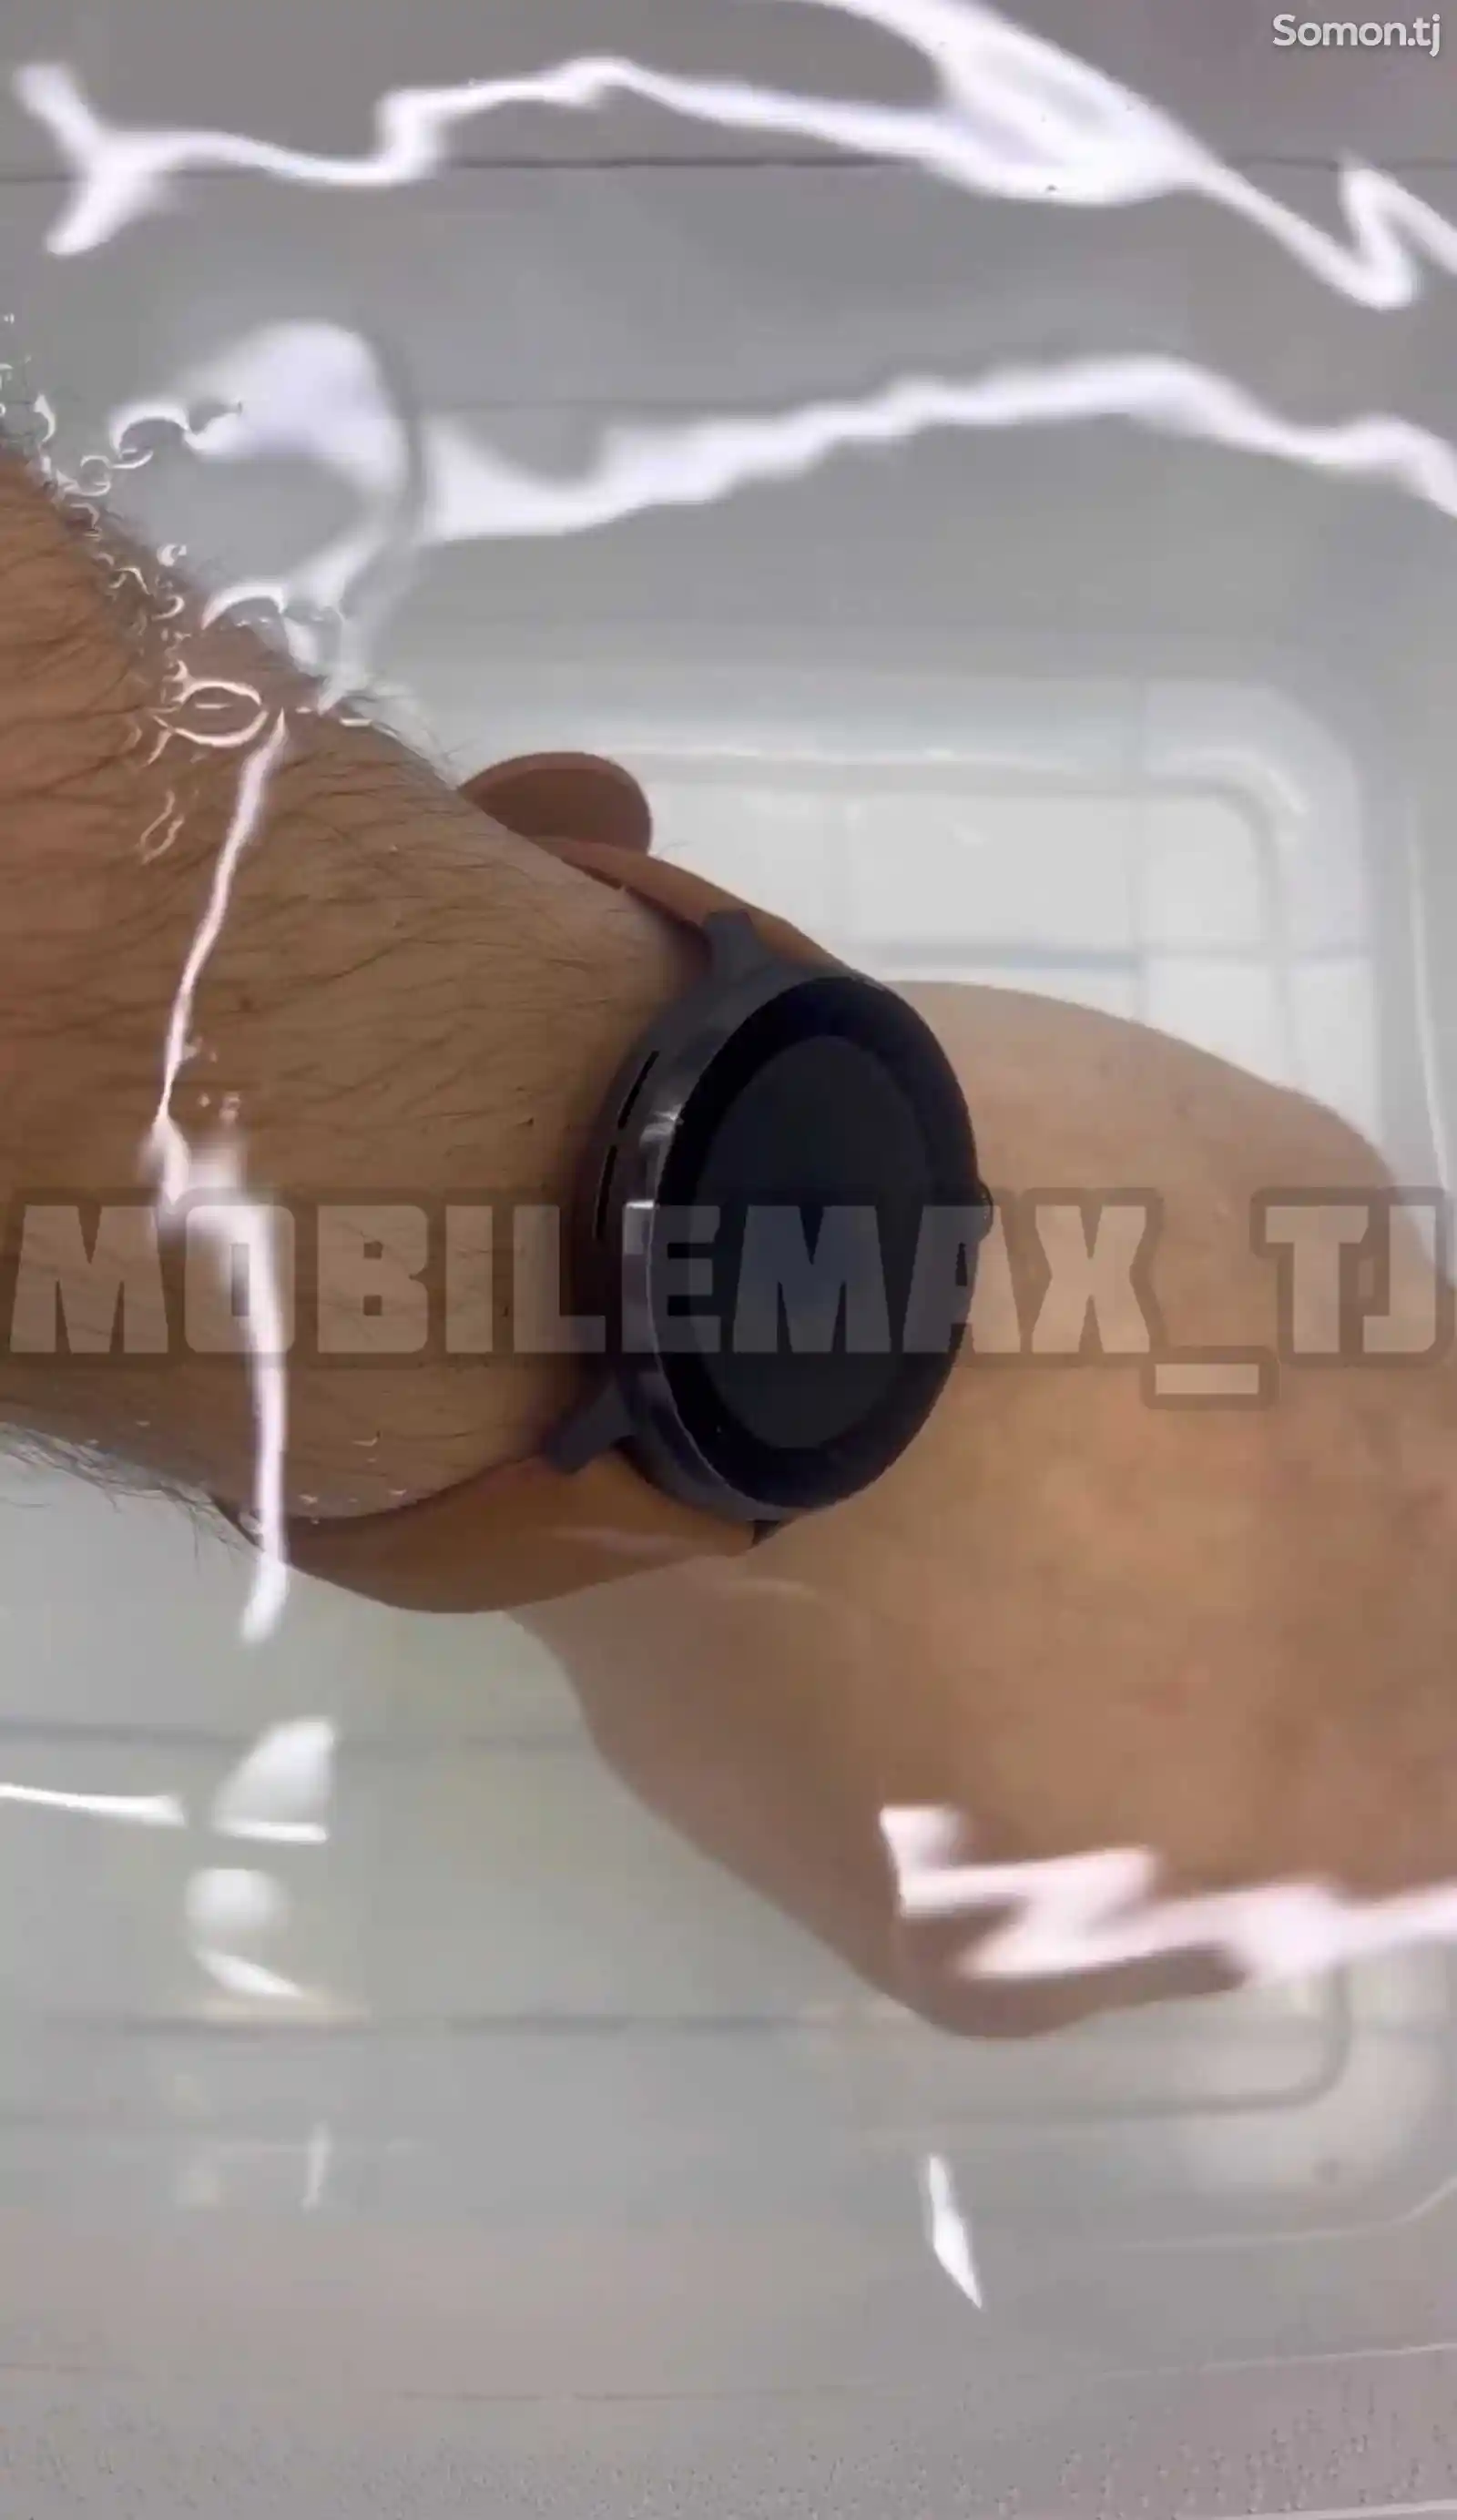 Смарт часы Xiaomi watch - mibro lite 2 original-11